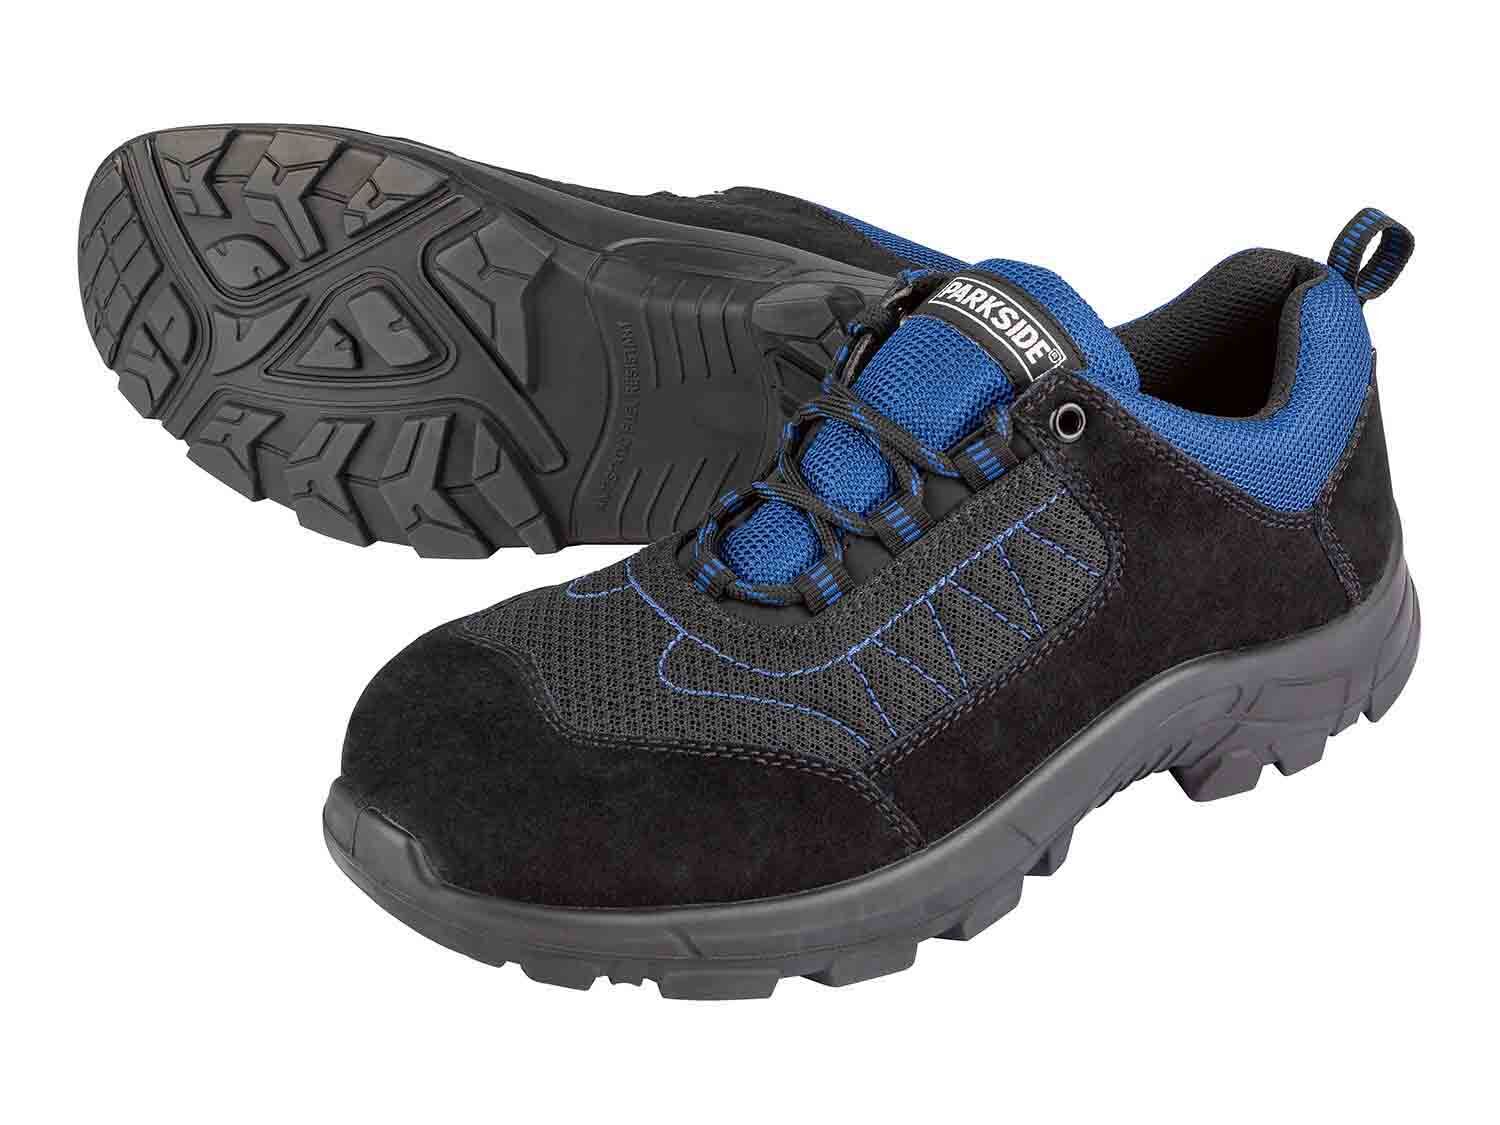 Zapatos de seguridad S3 de cuero caña baja